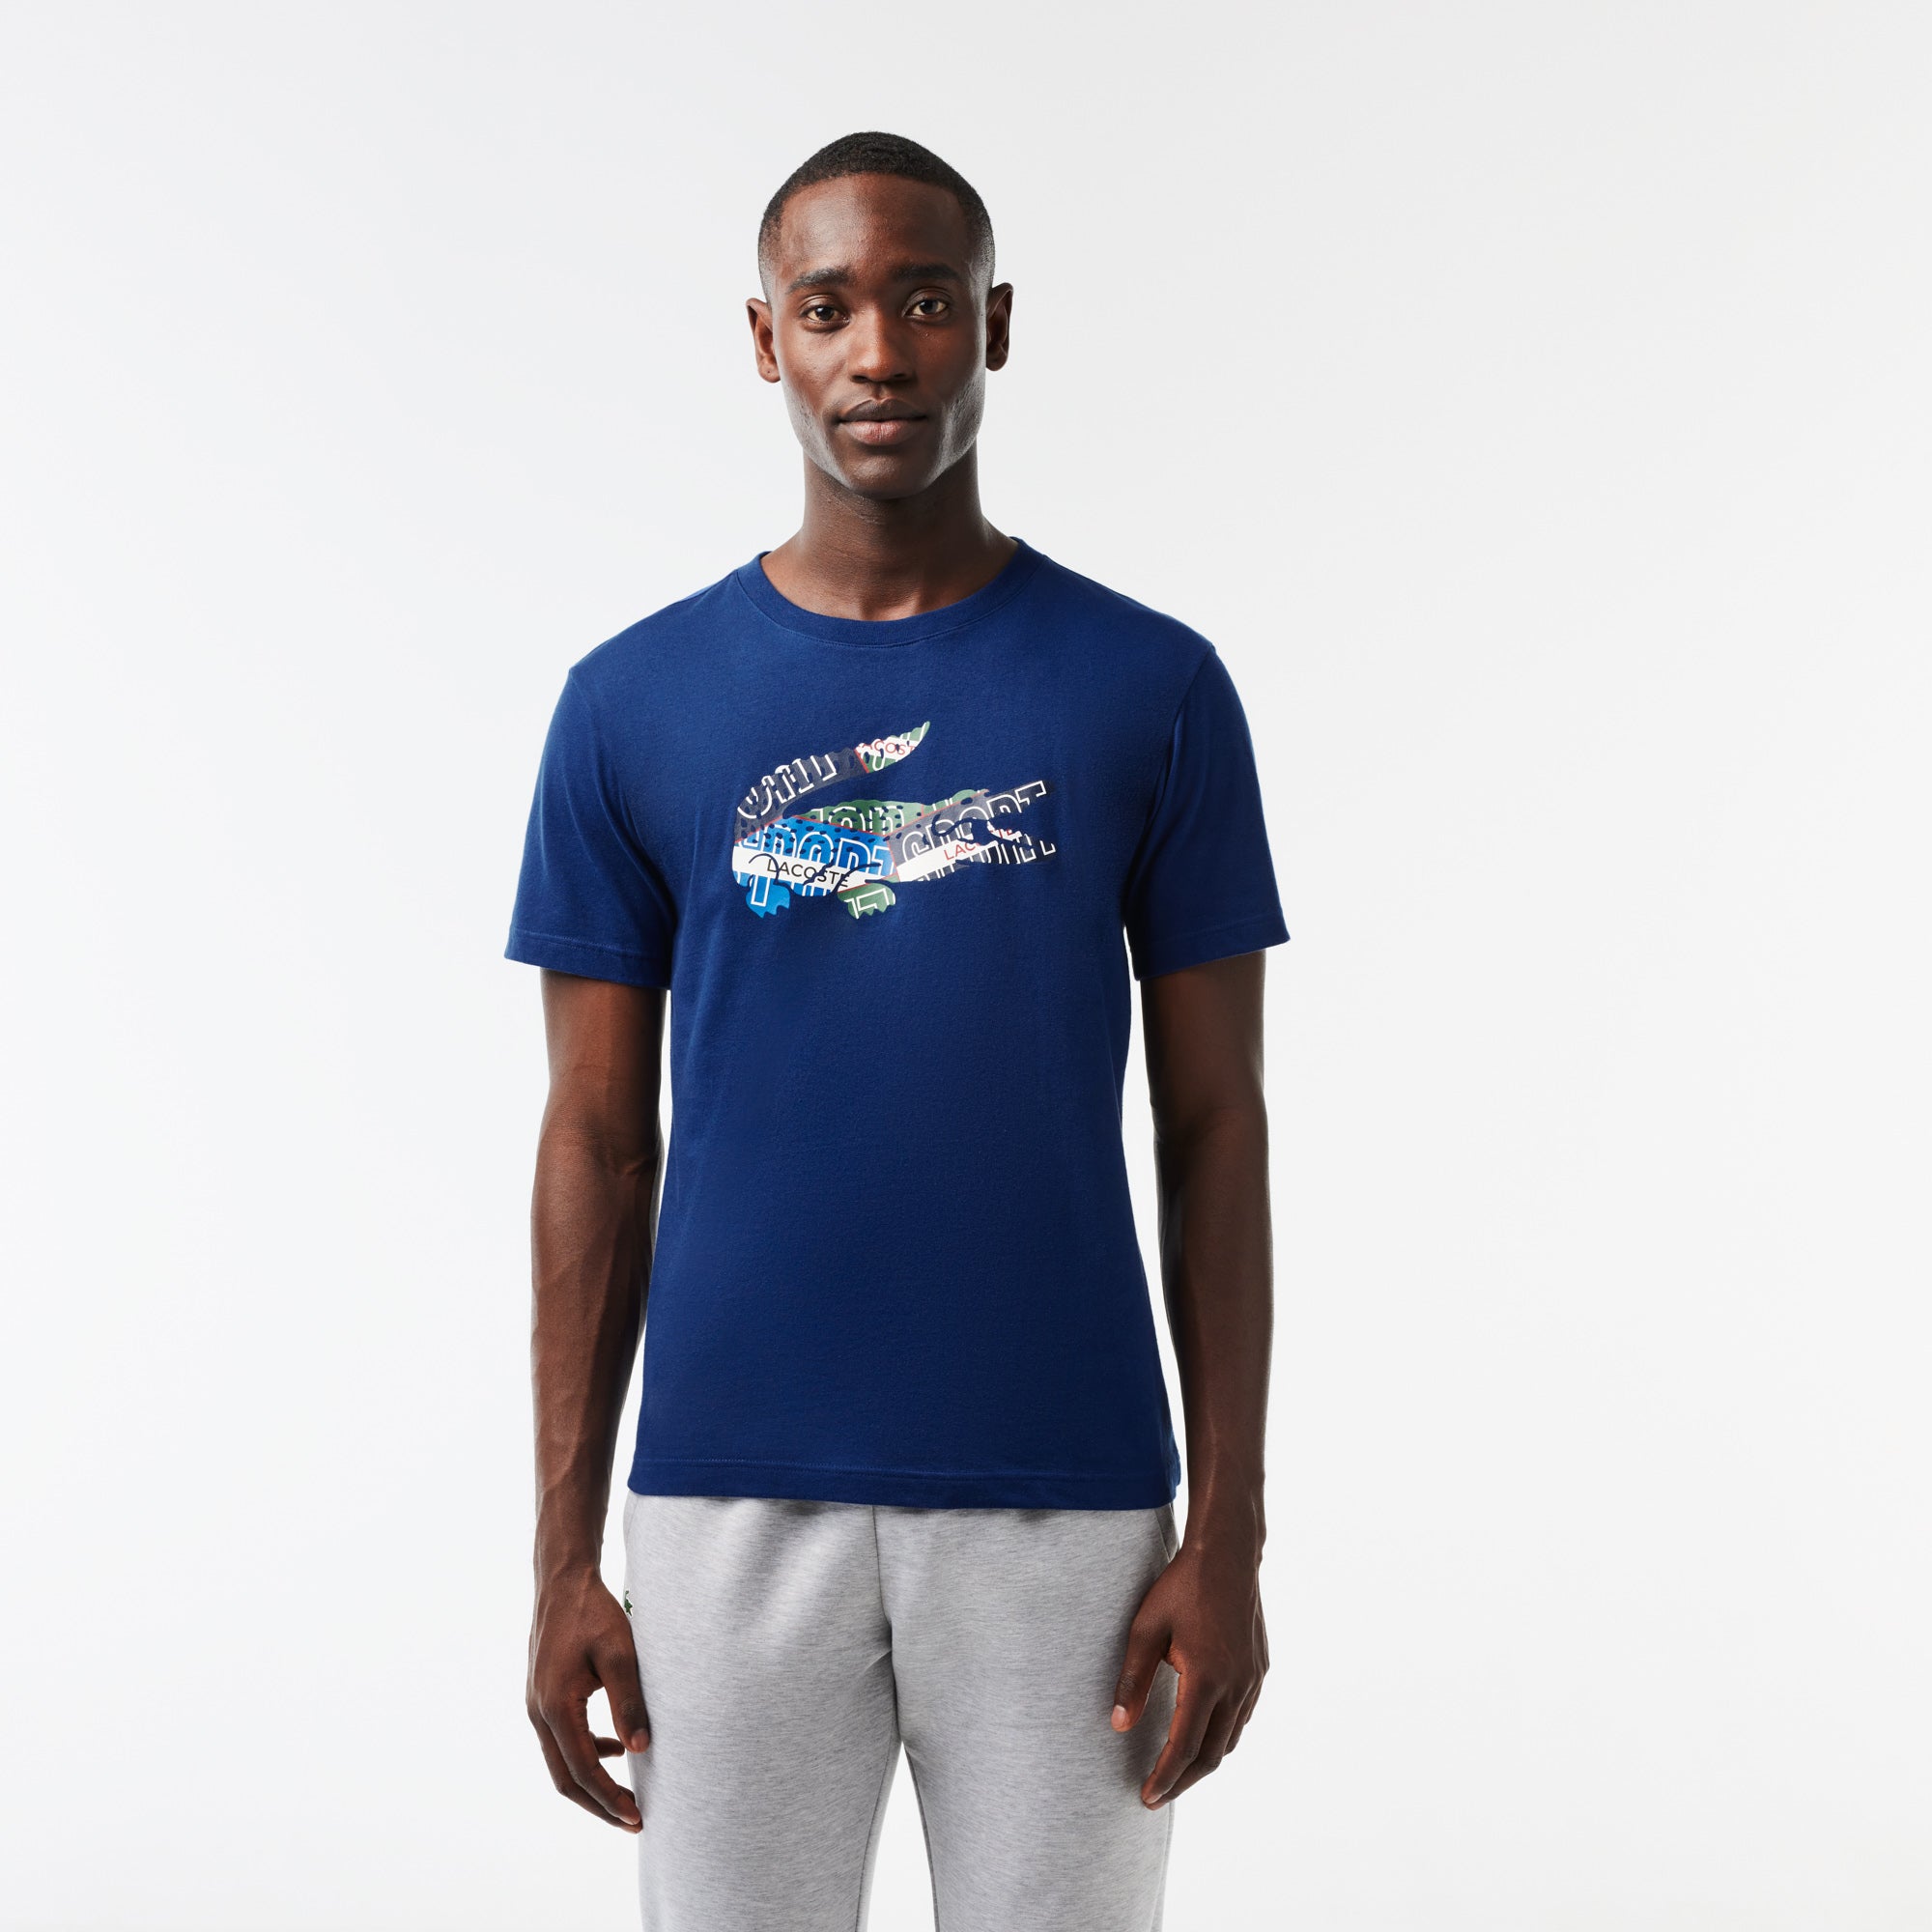 Jersey Cotton – rue T-shirt Blue Sport de Navy can